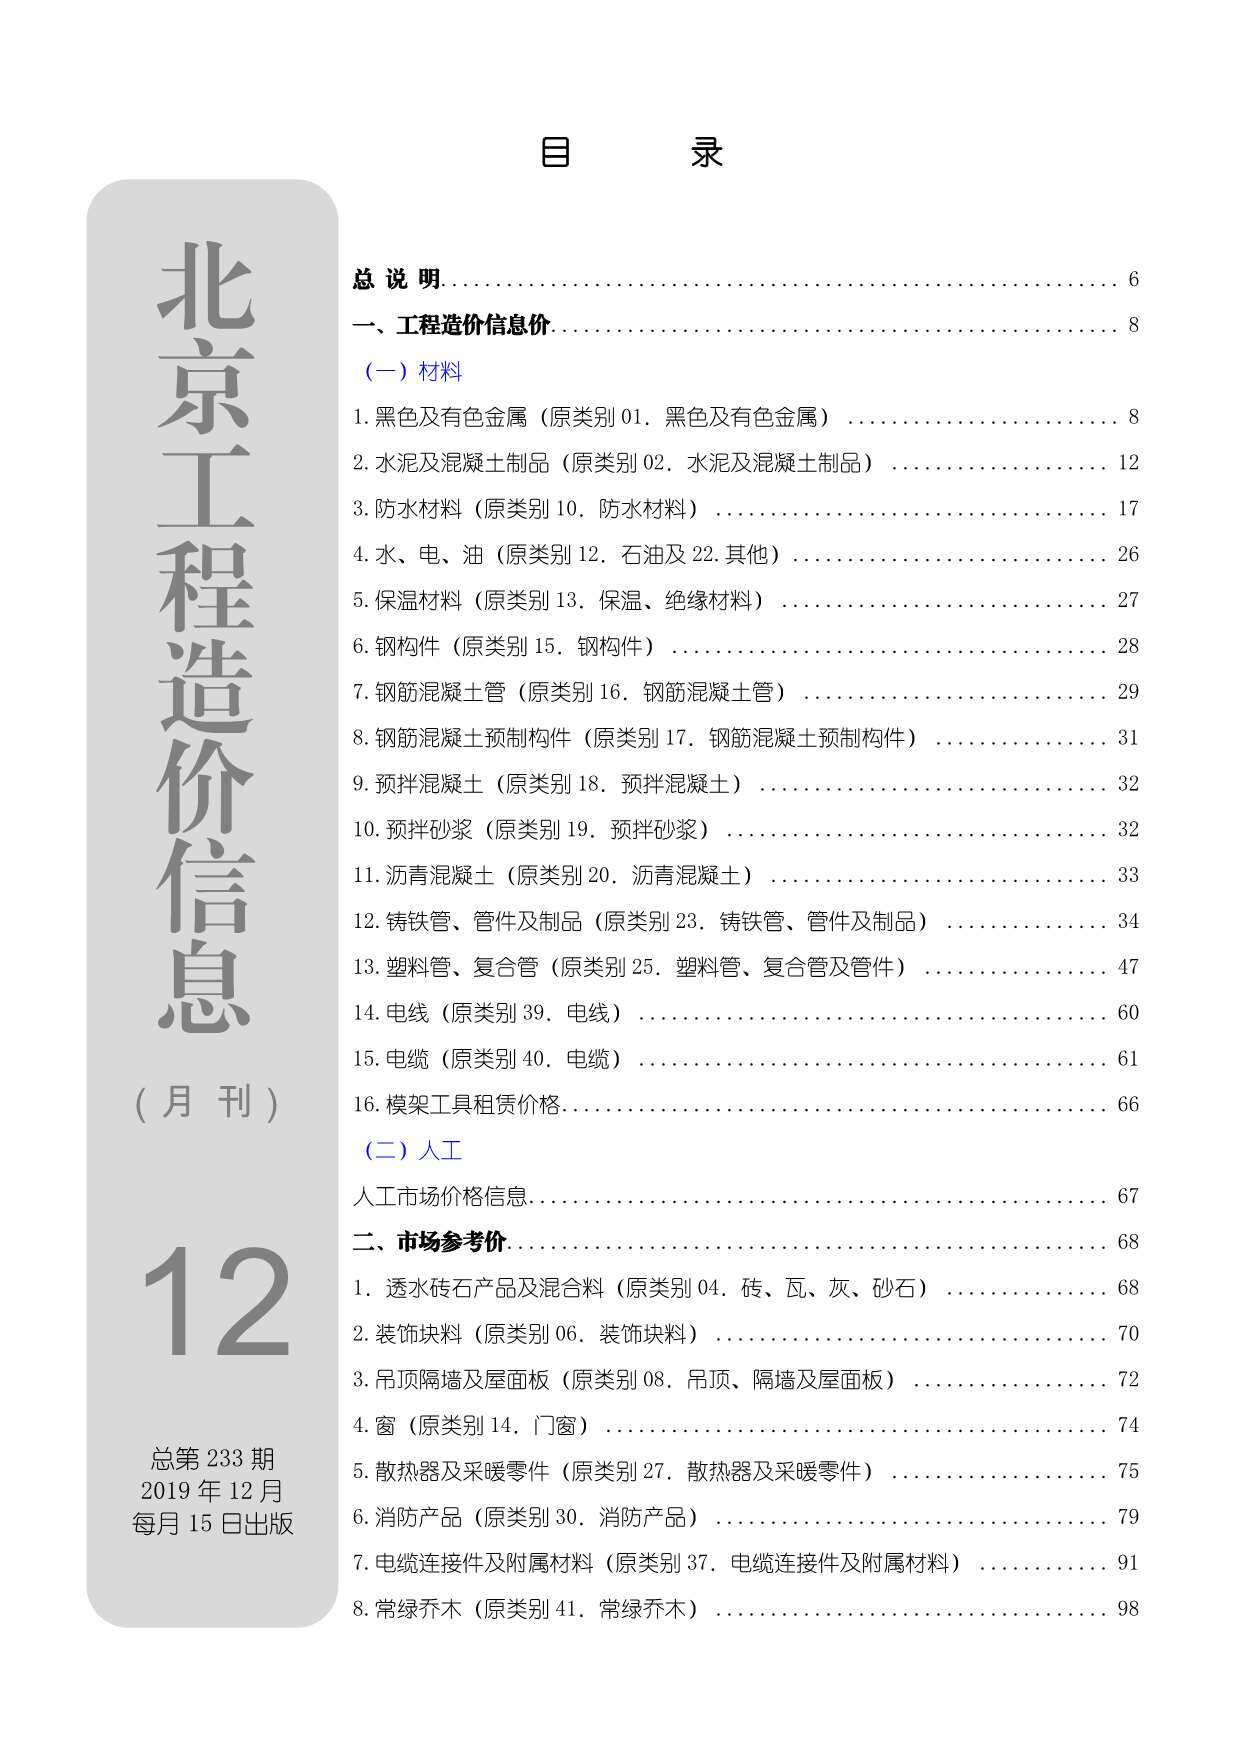 北京市2019年第12期工程造价信息pdf电子版